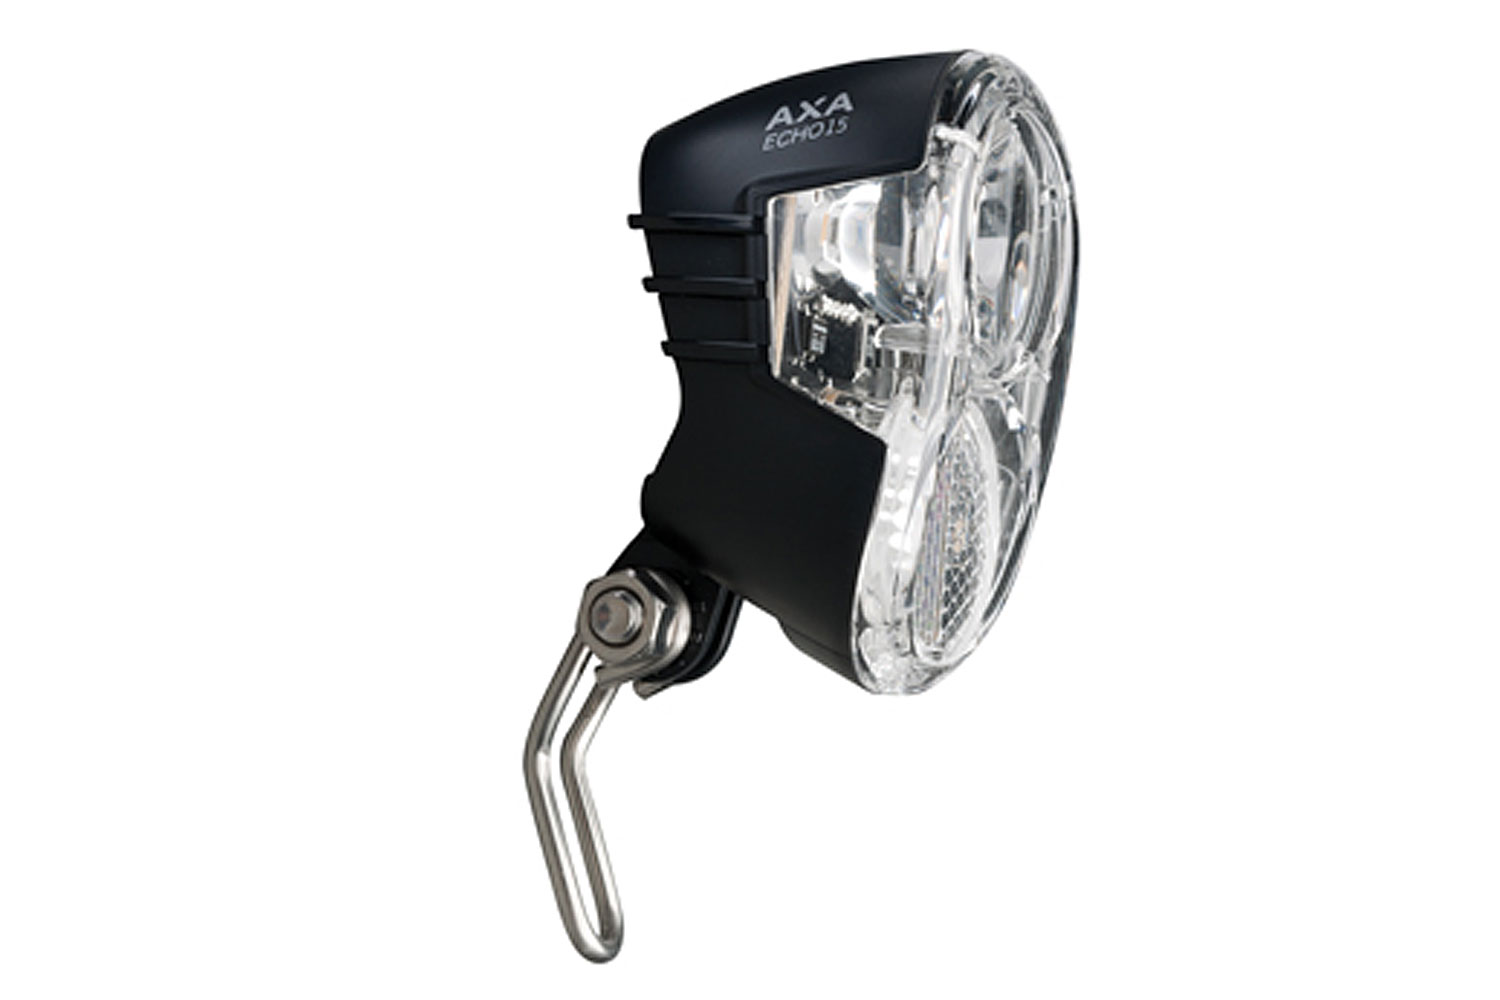 AXA Echo 15 LED Scheinwerfer  